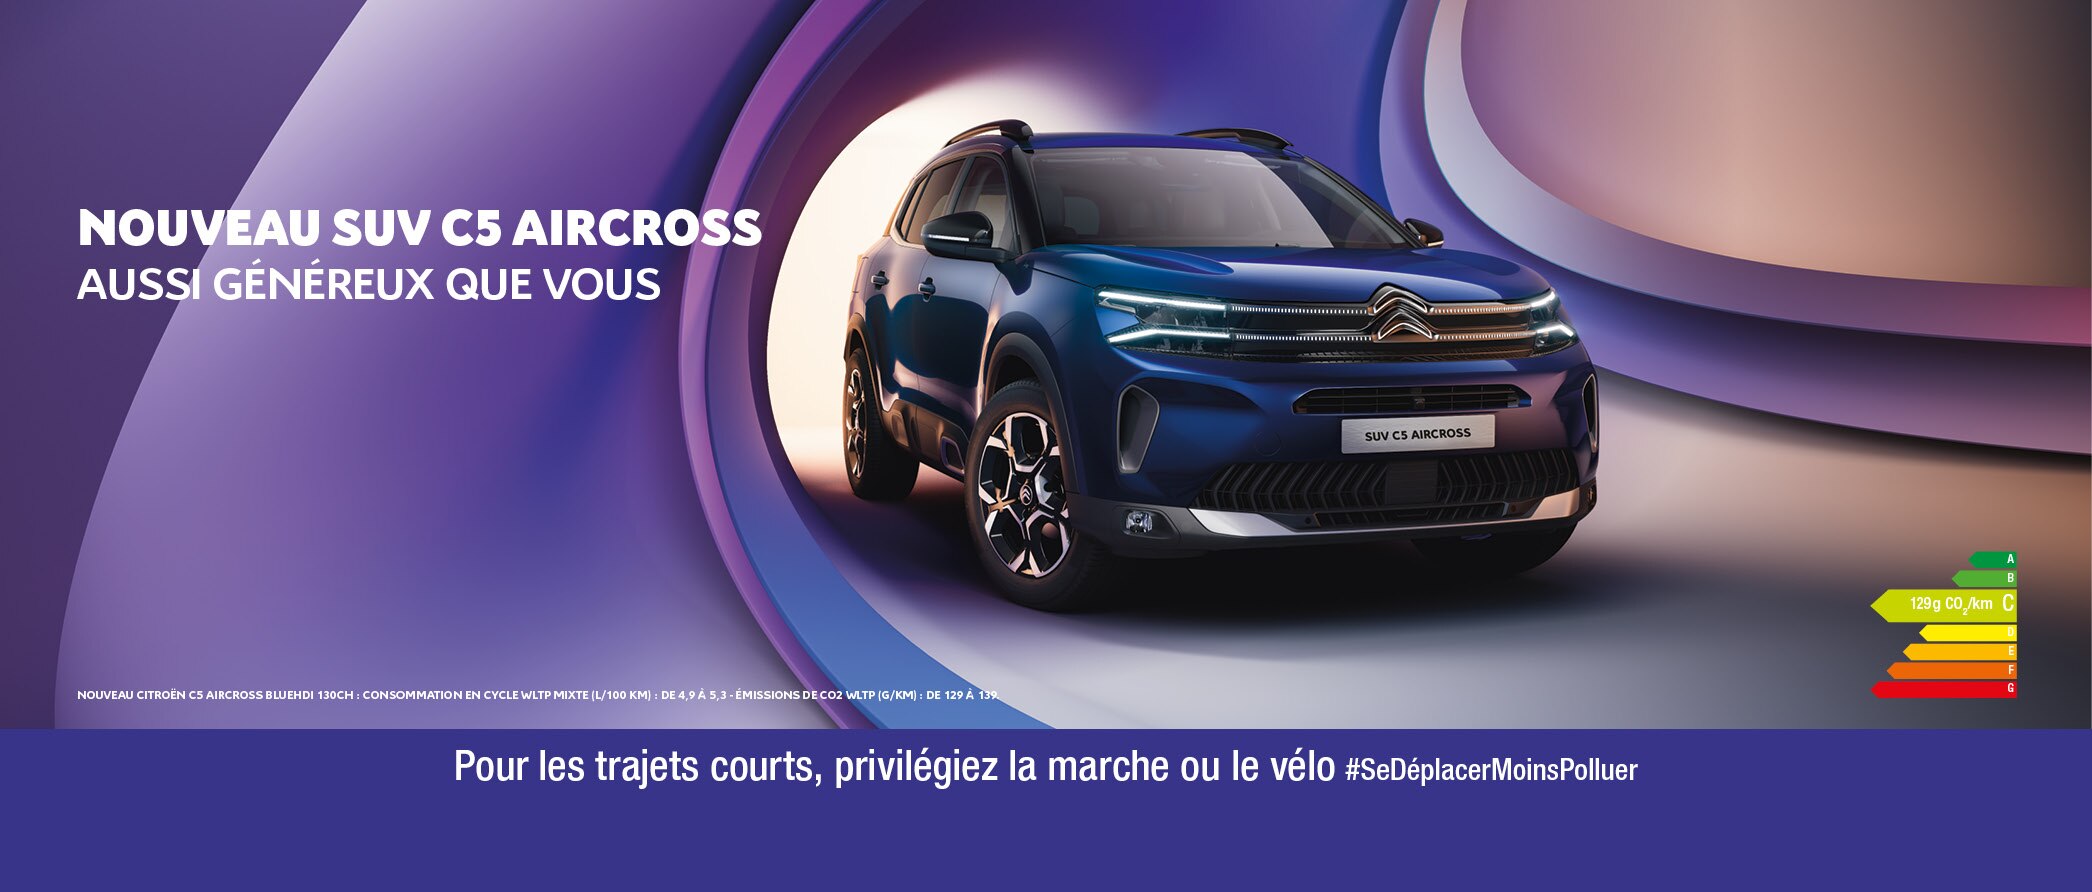 Nouveau SUV Citroën C5 Aircross